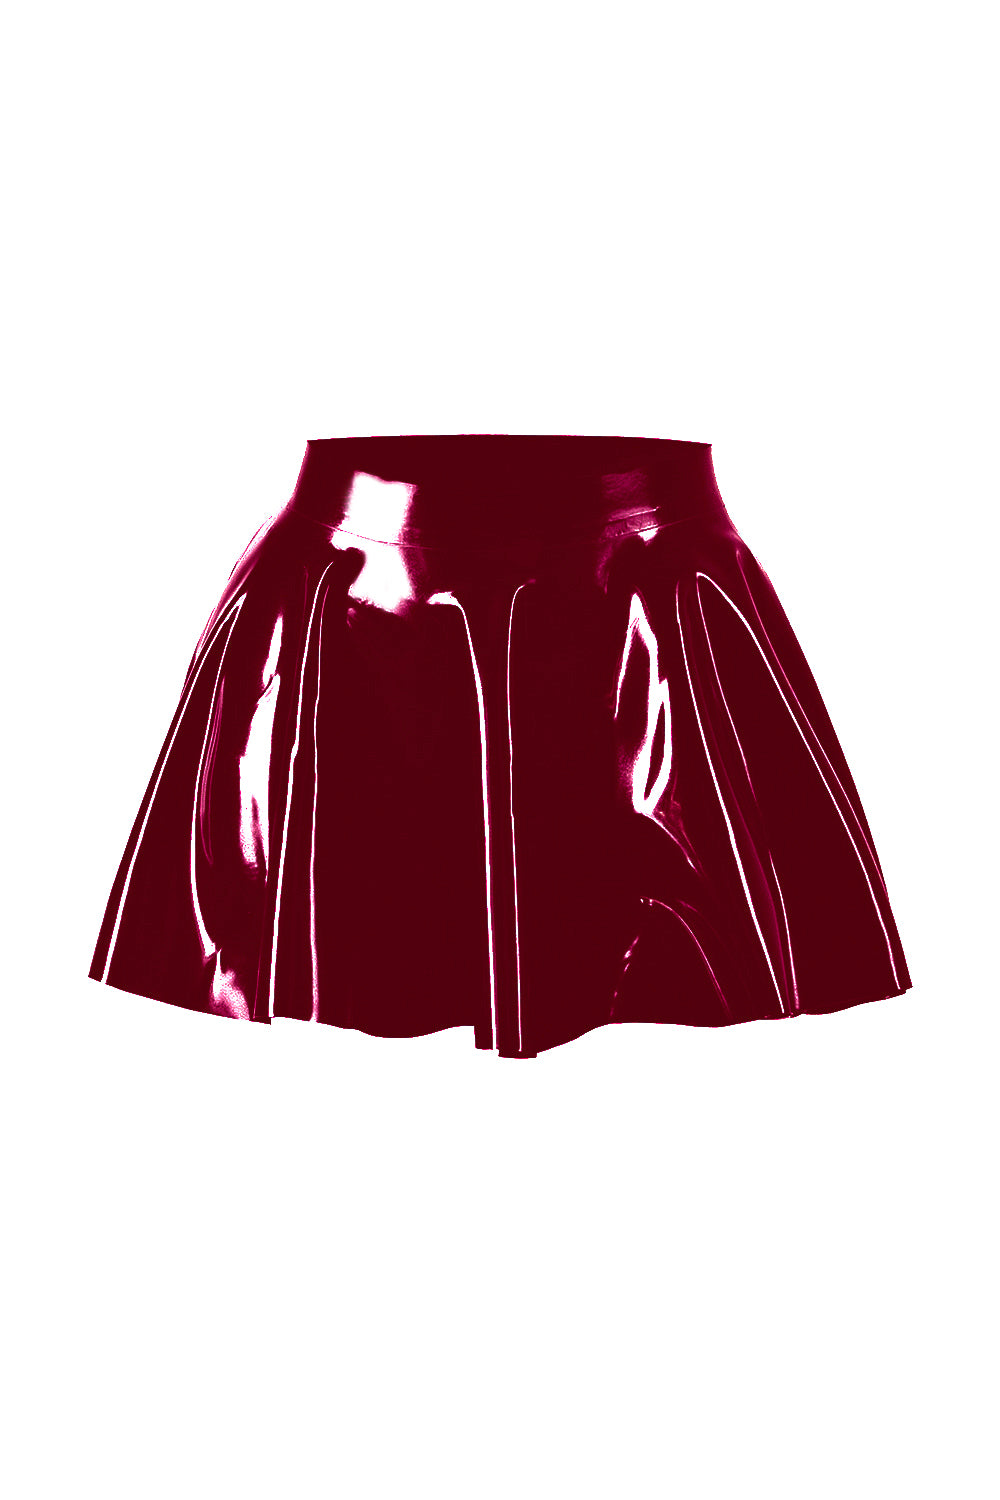 Latex Skater Skirt. Cherry